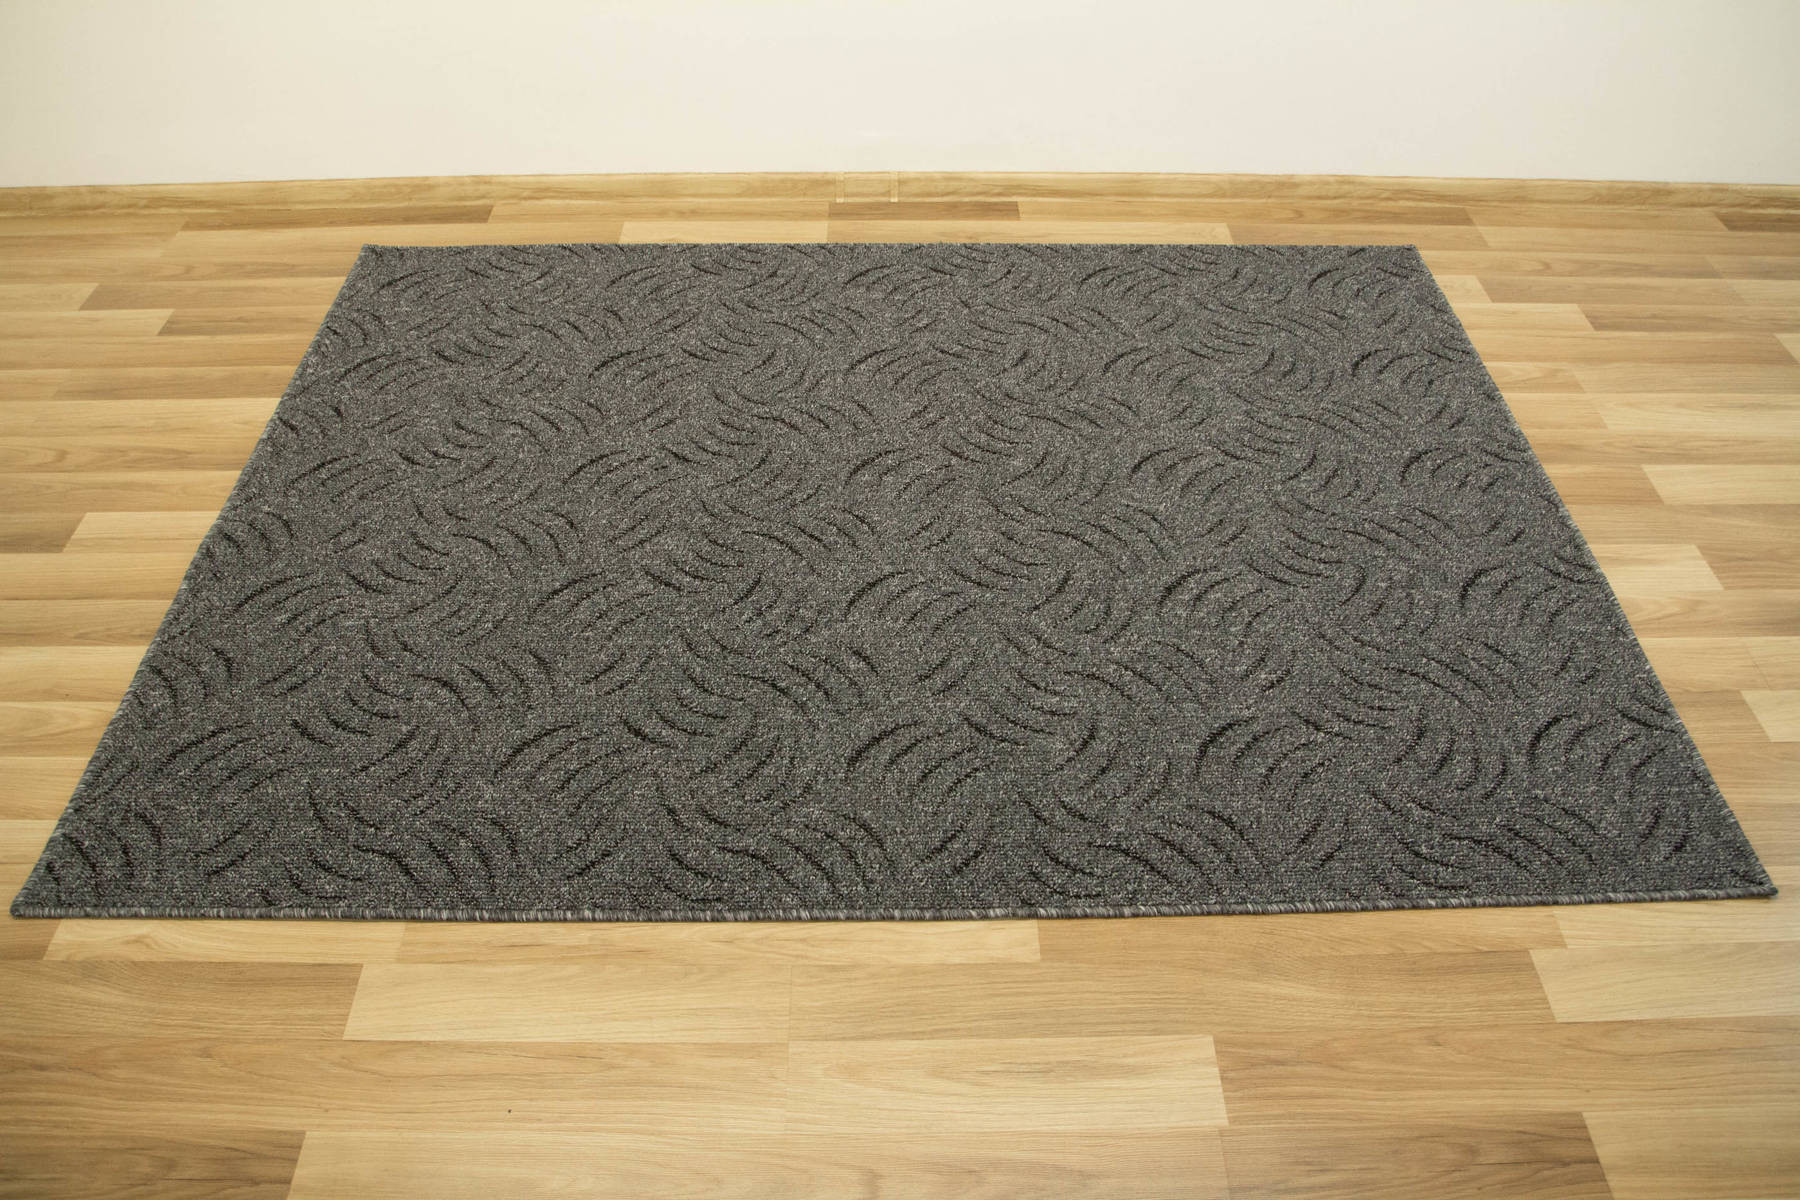 Metrážny koberec Presto 75 sivý/tmavo sivý/čierny